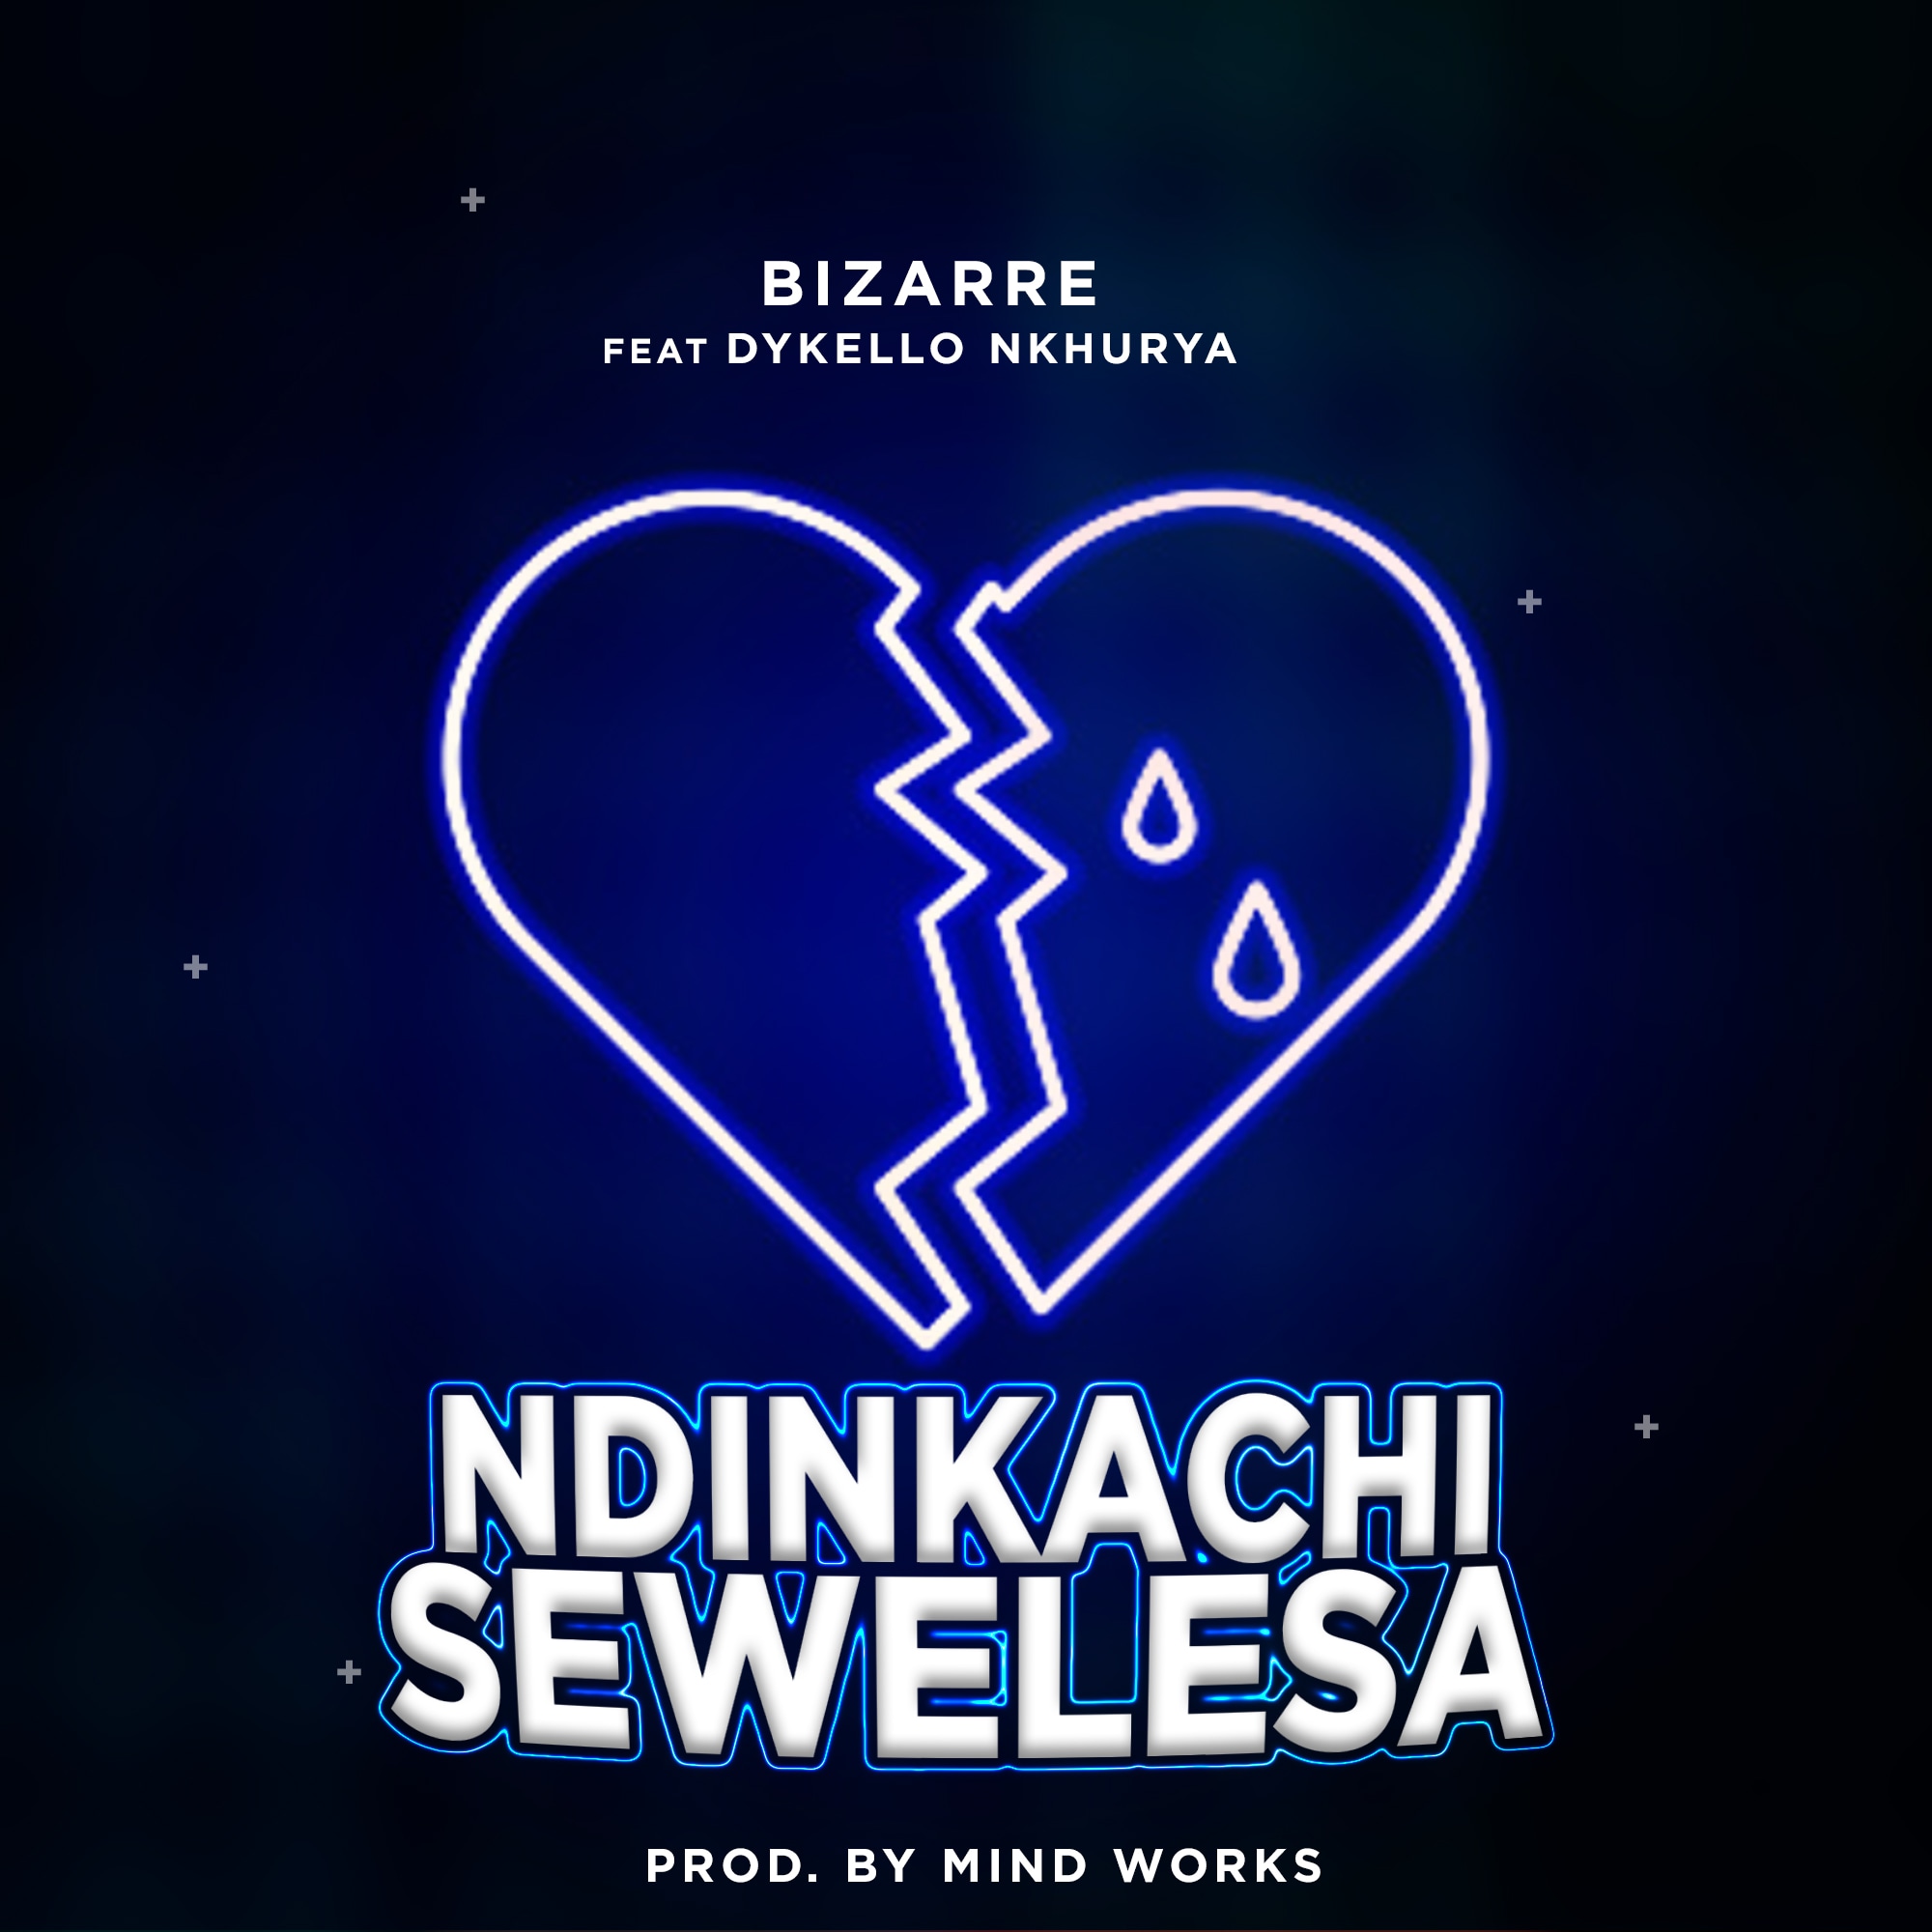 Bizarre-feat-Dykello-Ndinkachisewelesa-Prod-by-Mind-works